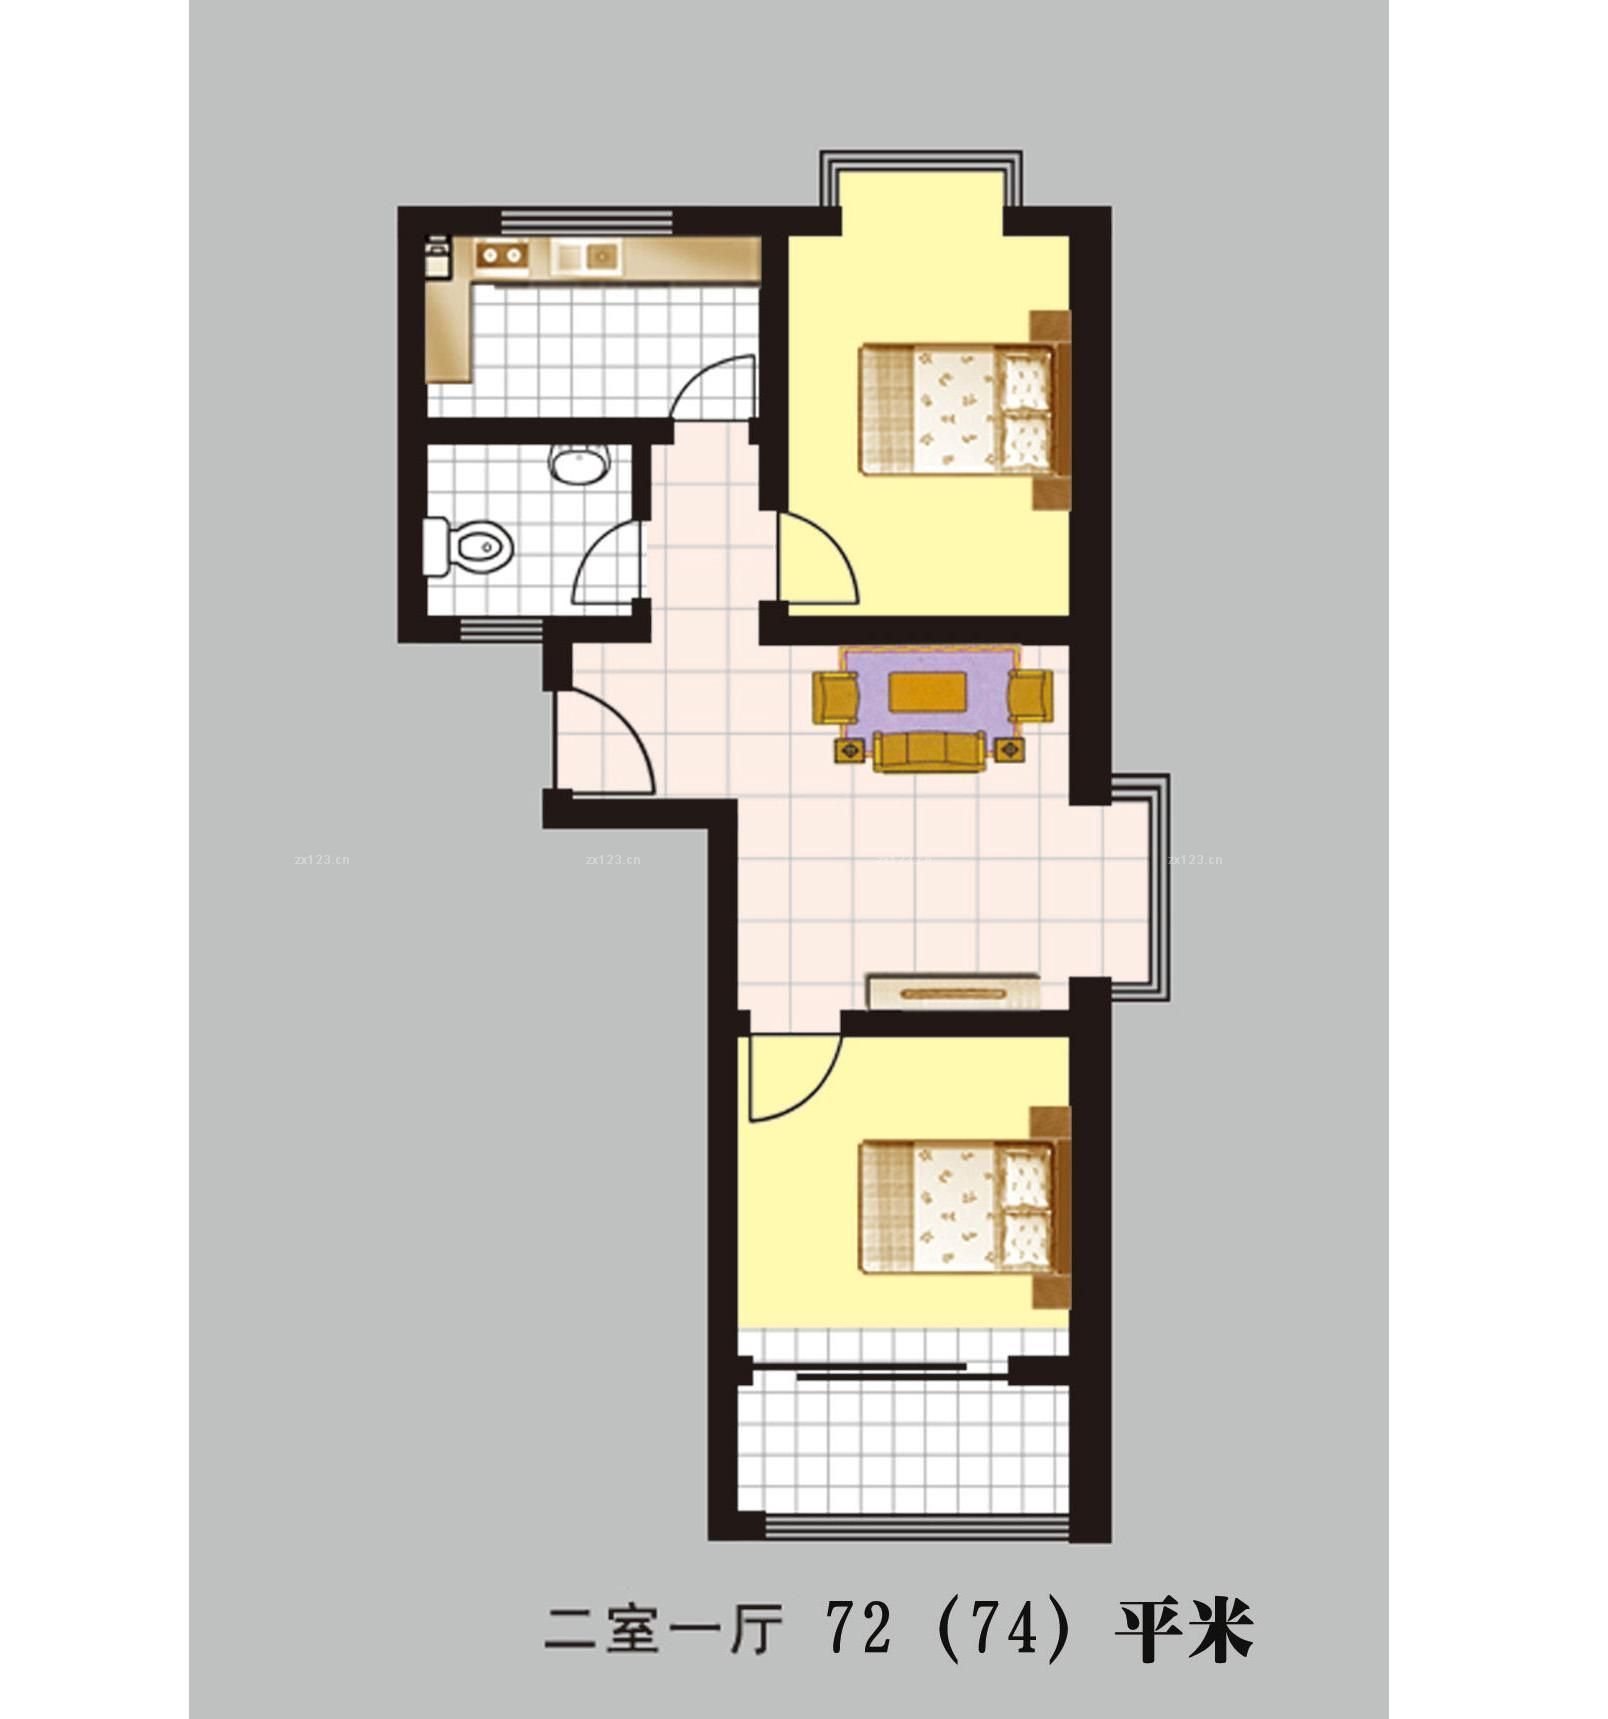 二室一厅一卫户型设计图